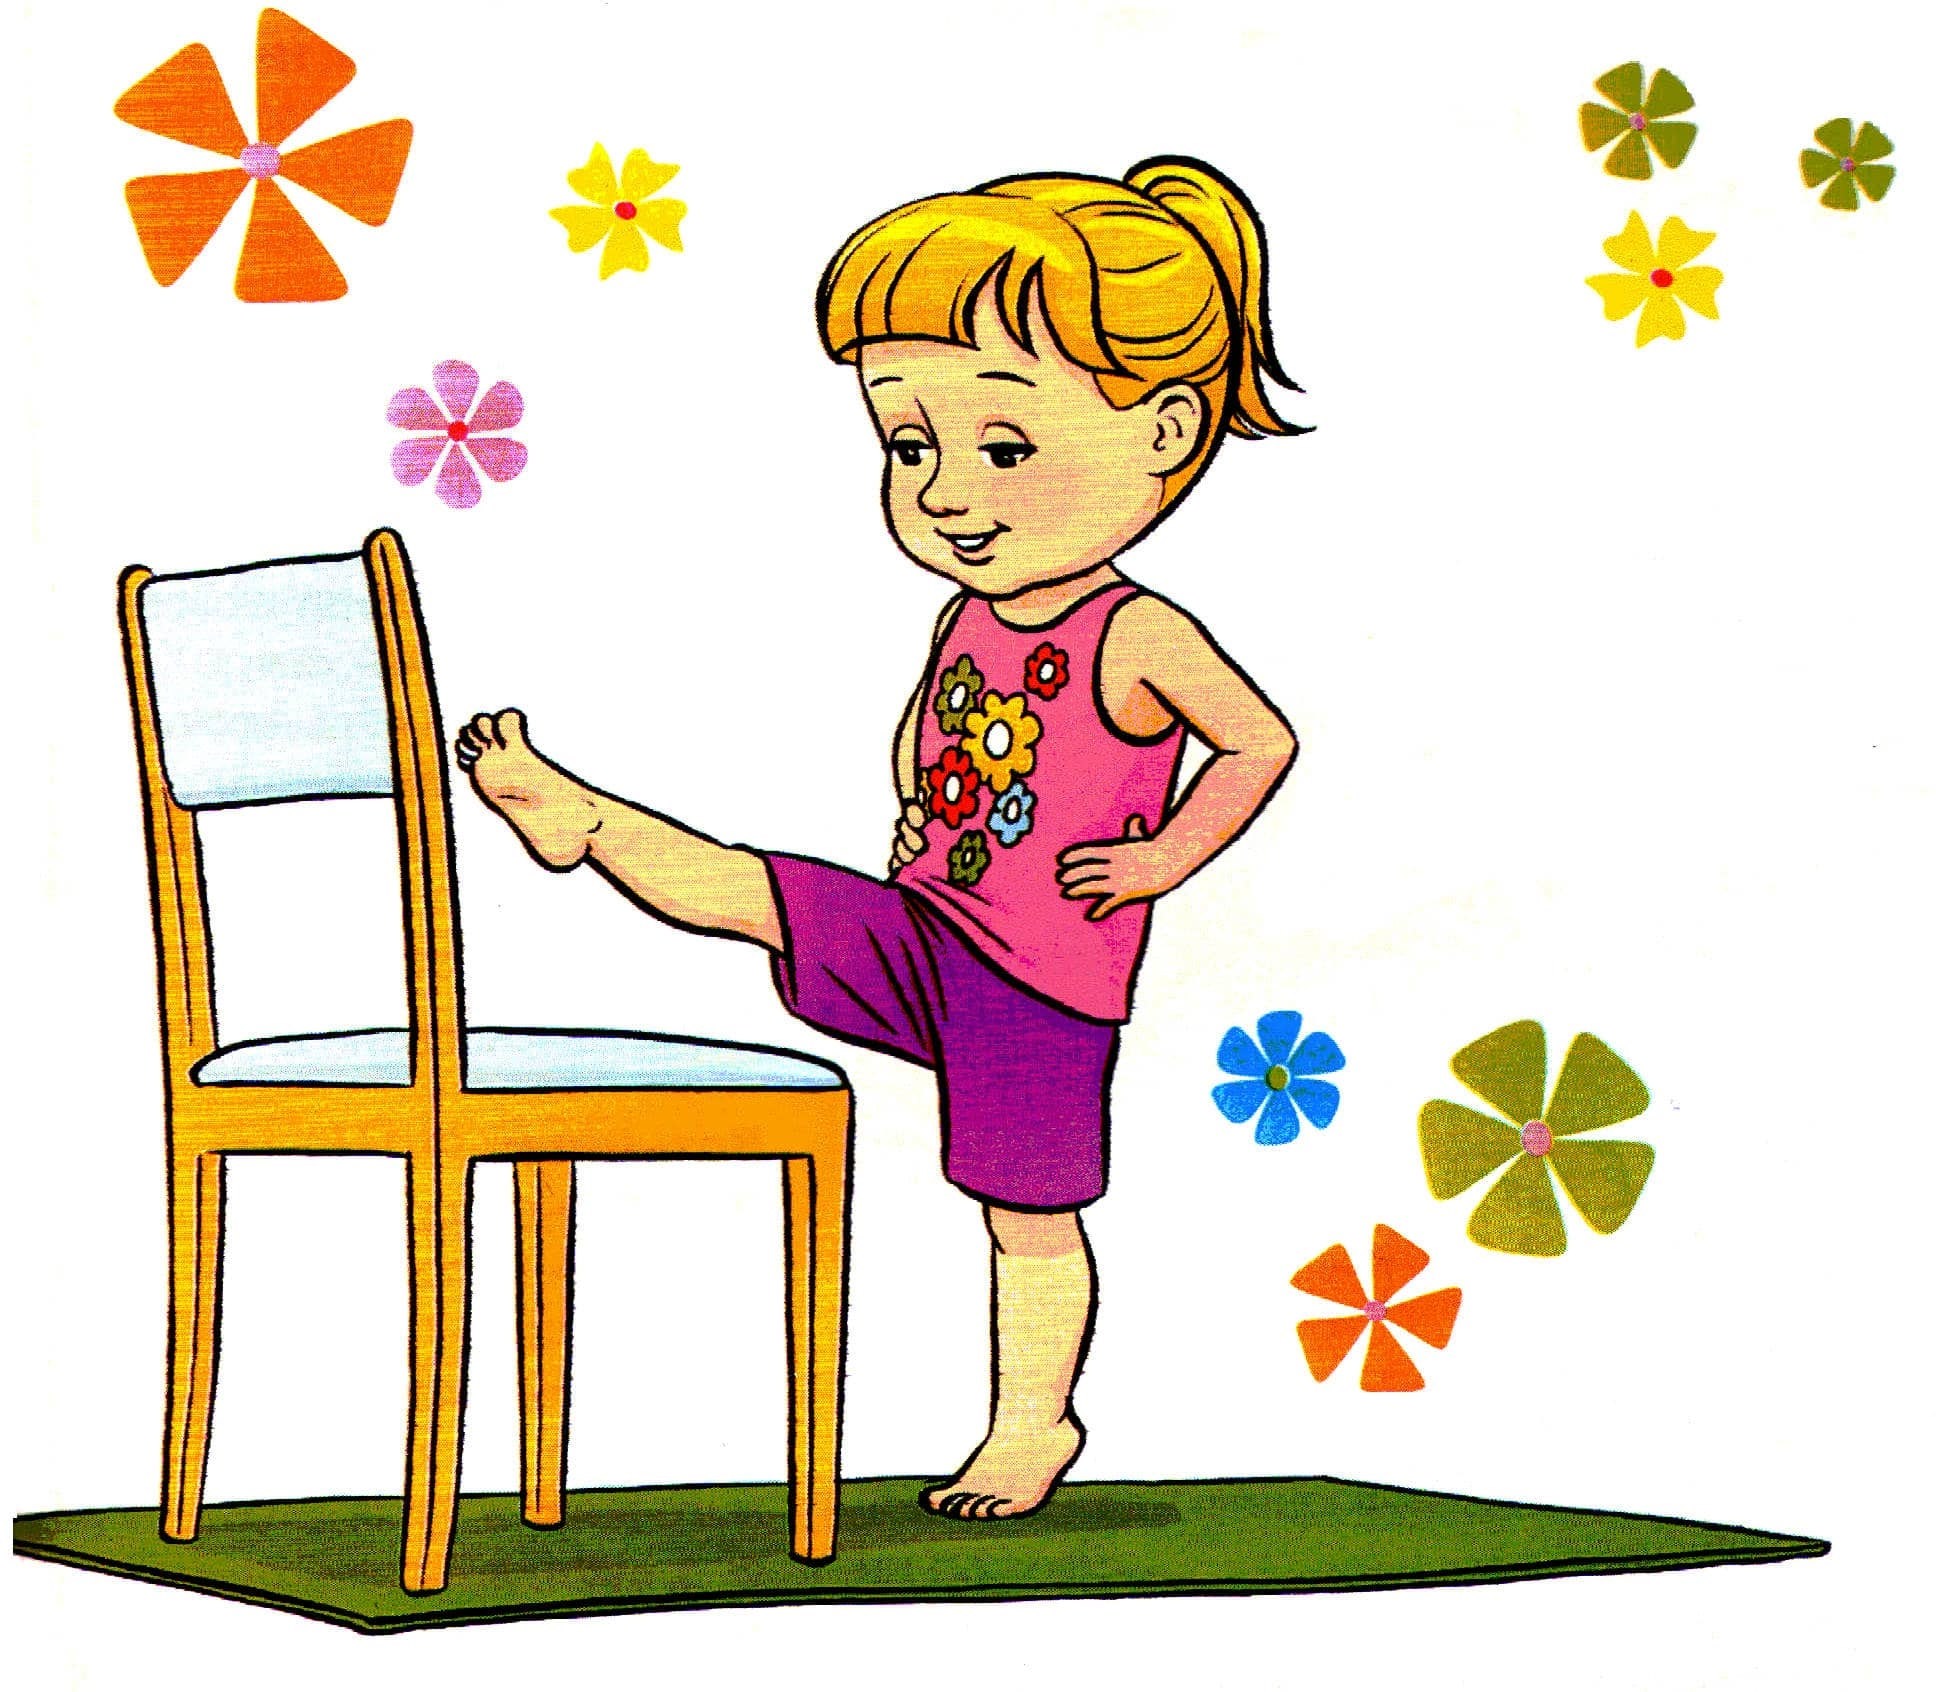 Картинка про зарядку. Детские картинки. Зарядка картинки для детей. Картинки для дошкольников. Картинки для рисования для детей.